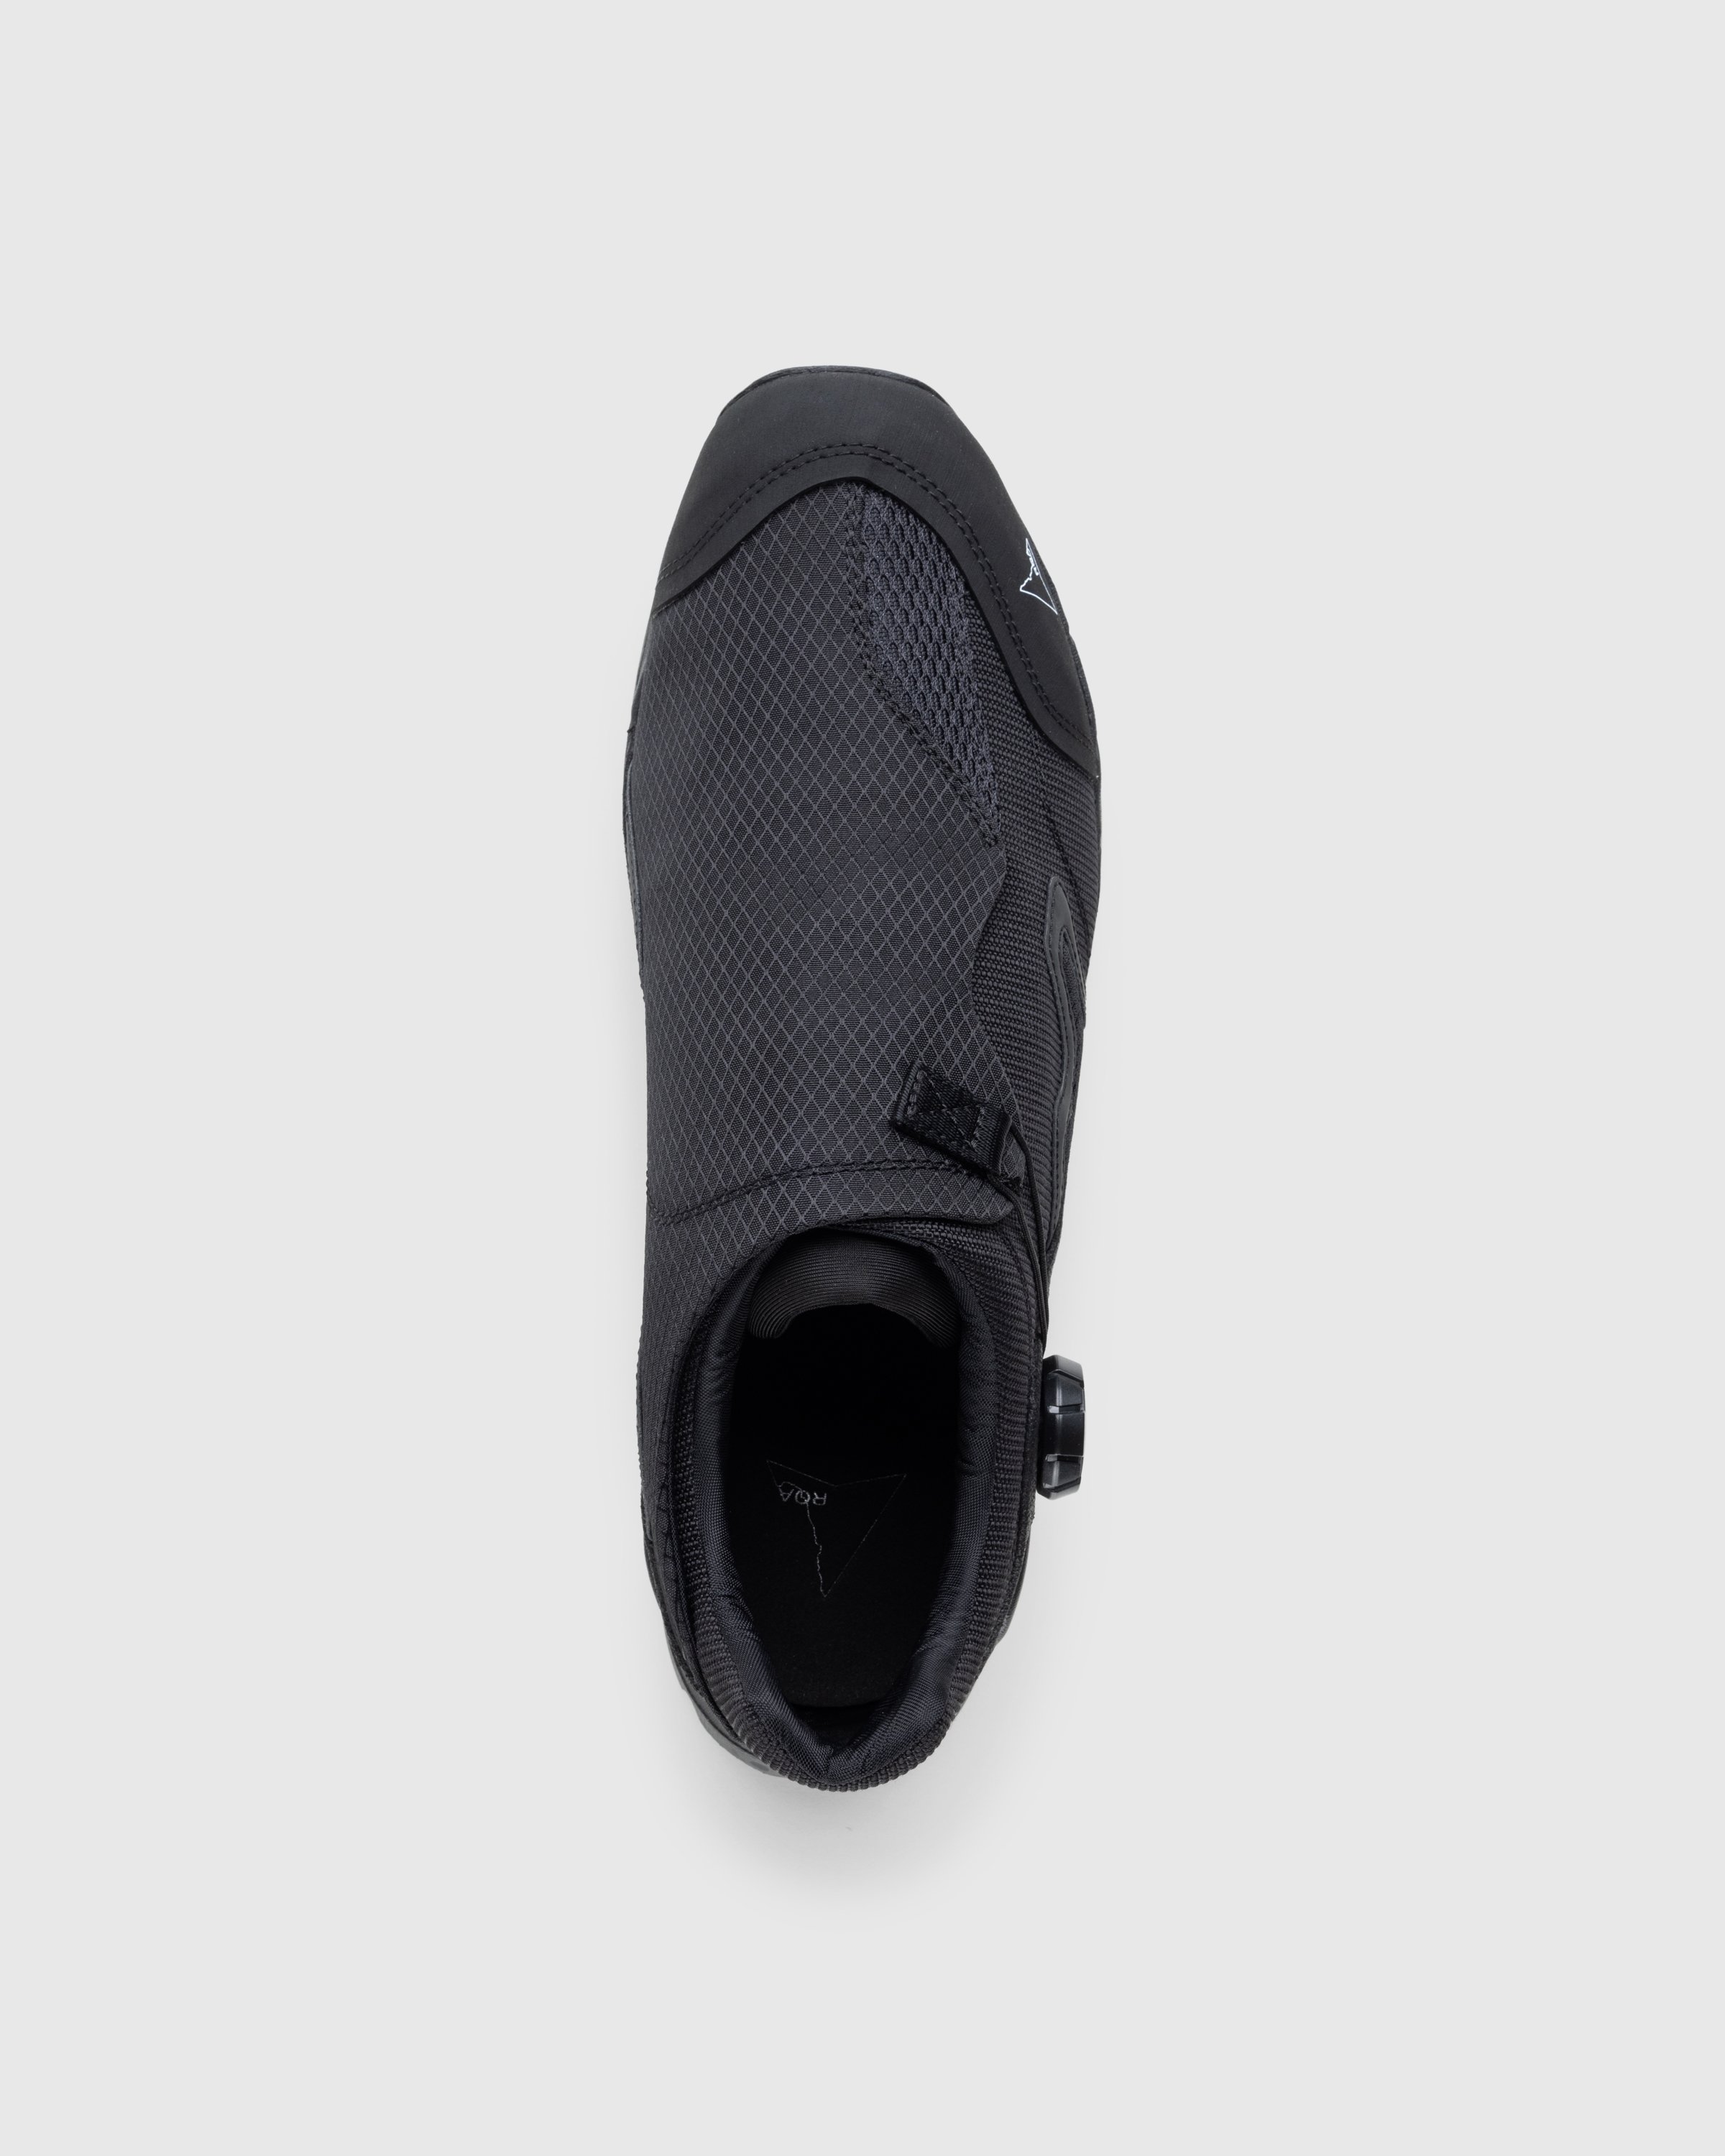 ROA - Minaar Black - Footwear -  - Image 5